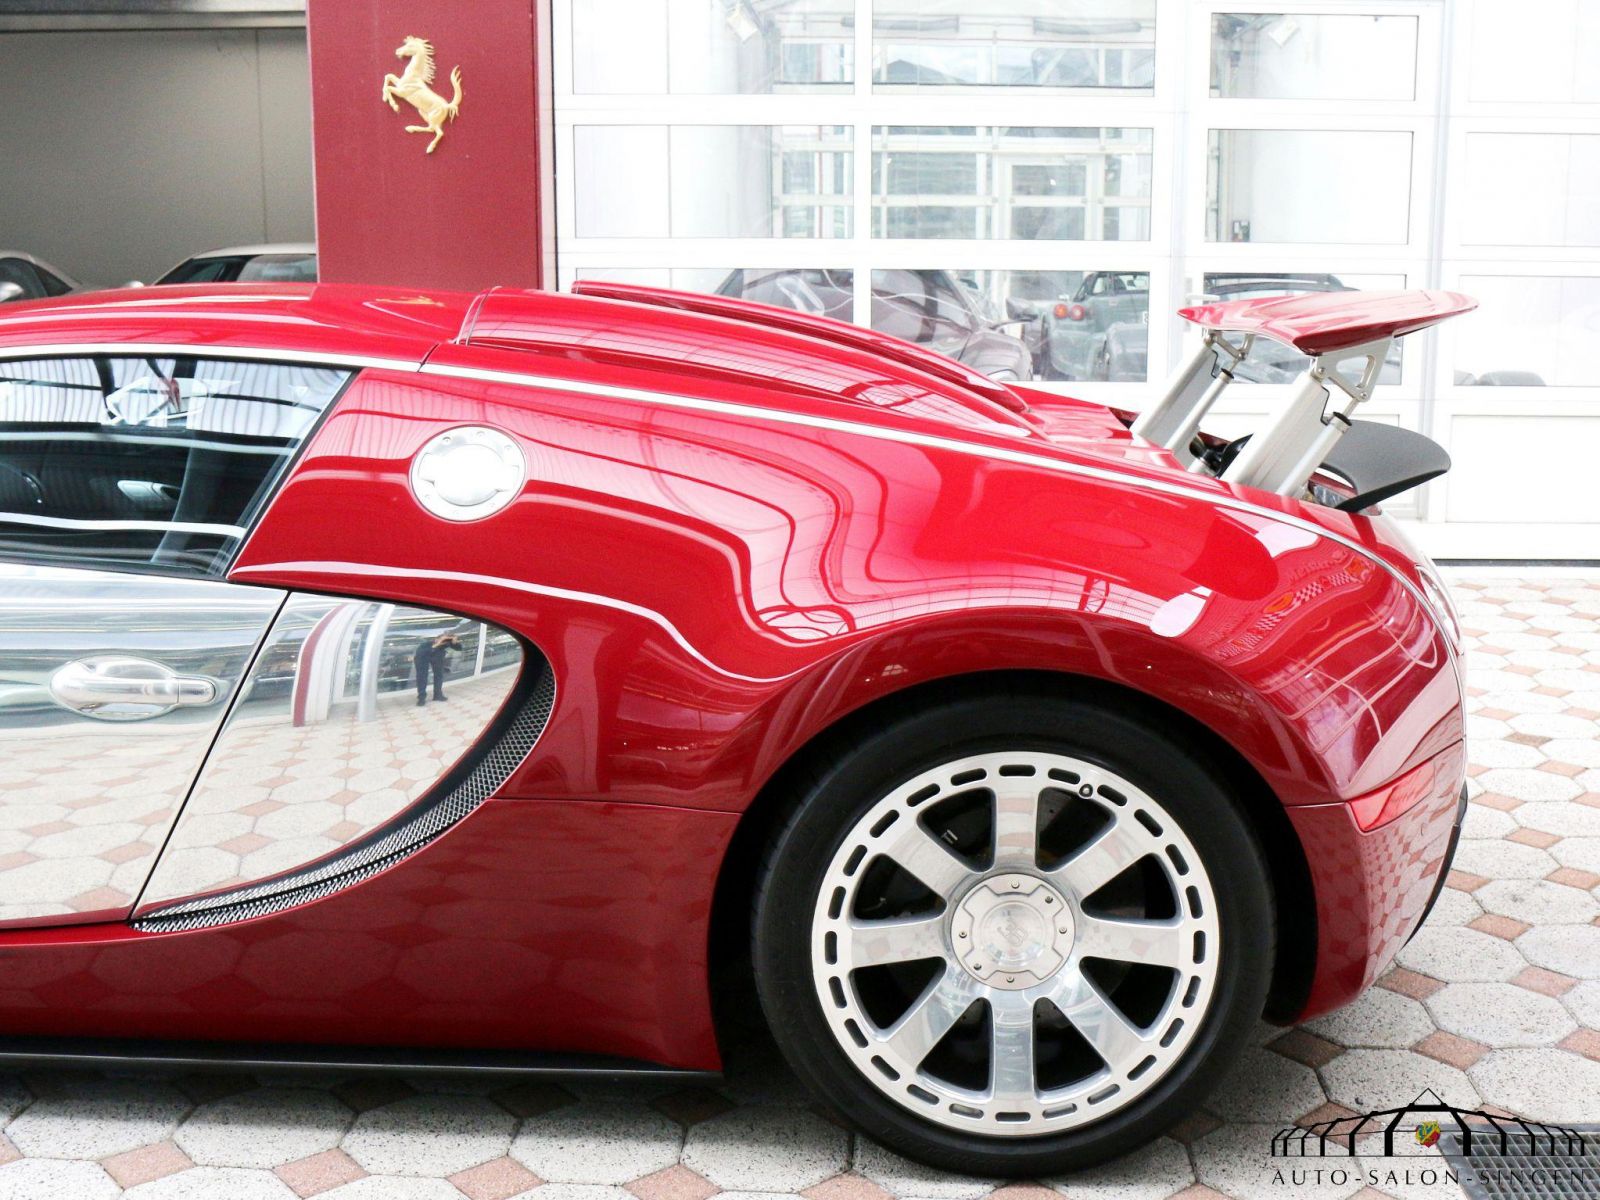 Bugatti - Salon Auto Singen